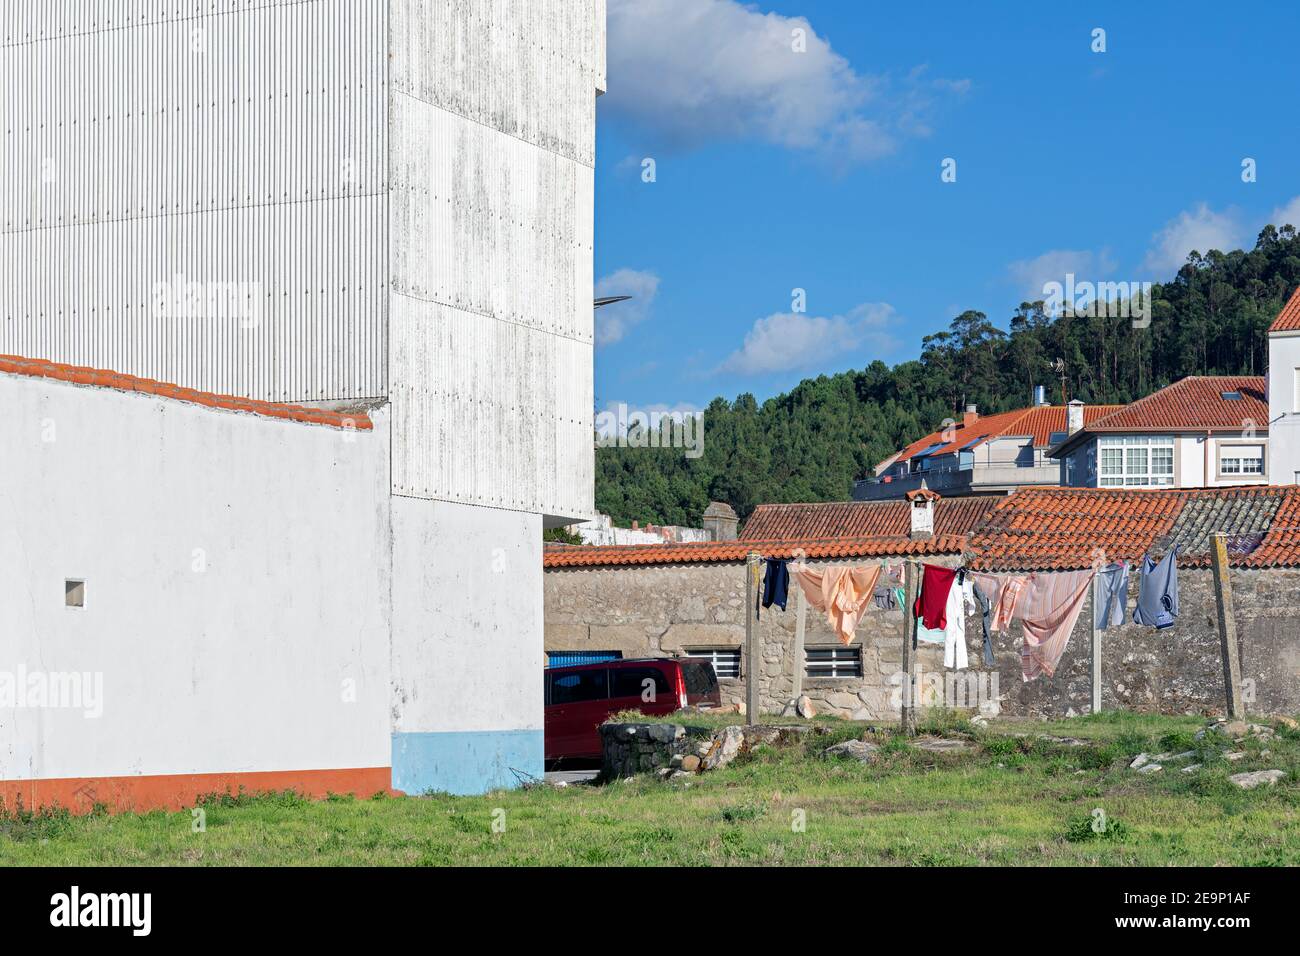 Europa, Spanien, Galicien, Porto do Son, traditionelle Wohnhäuser im Schatten eines großen Industriegebäudes Stockfoto